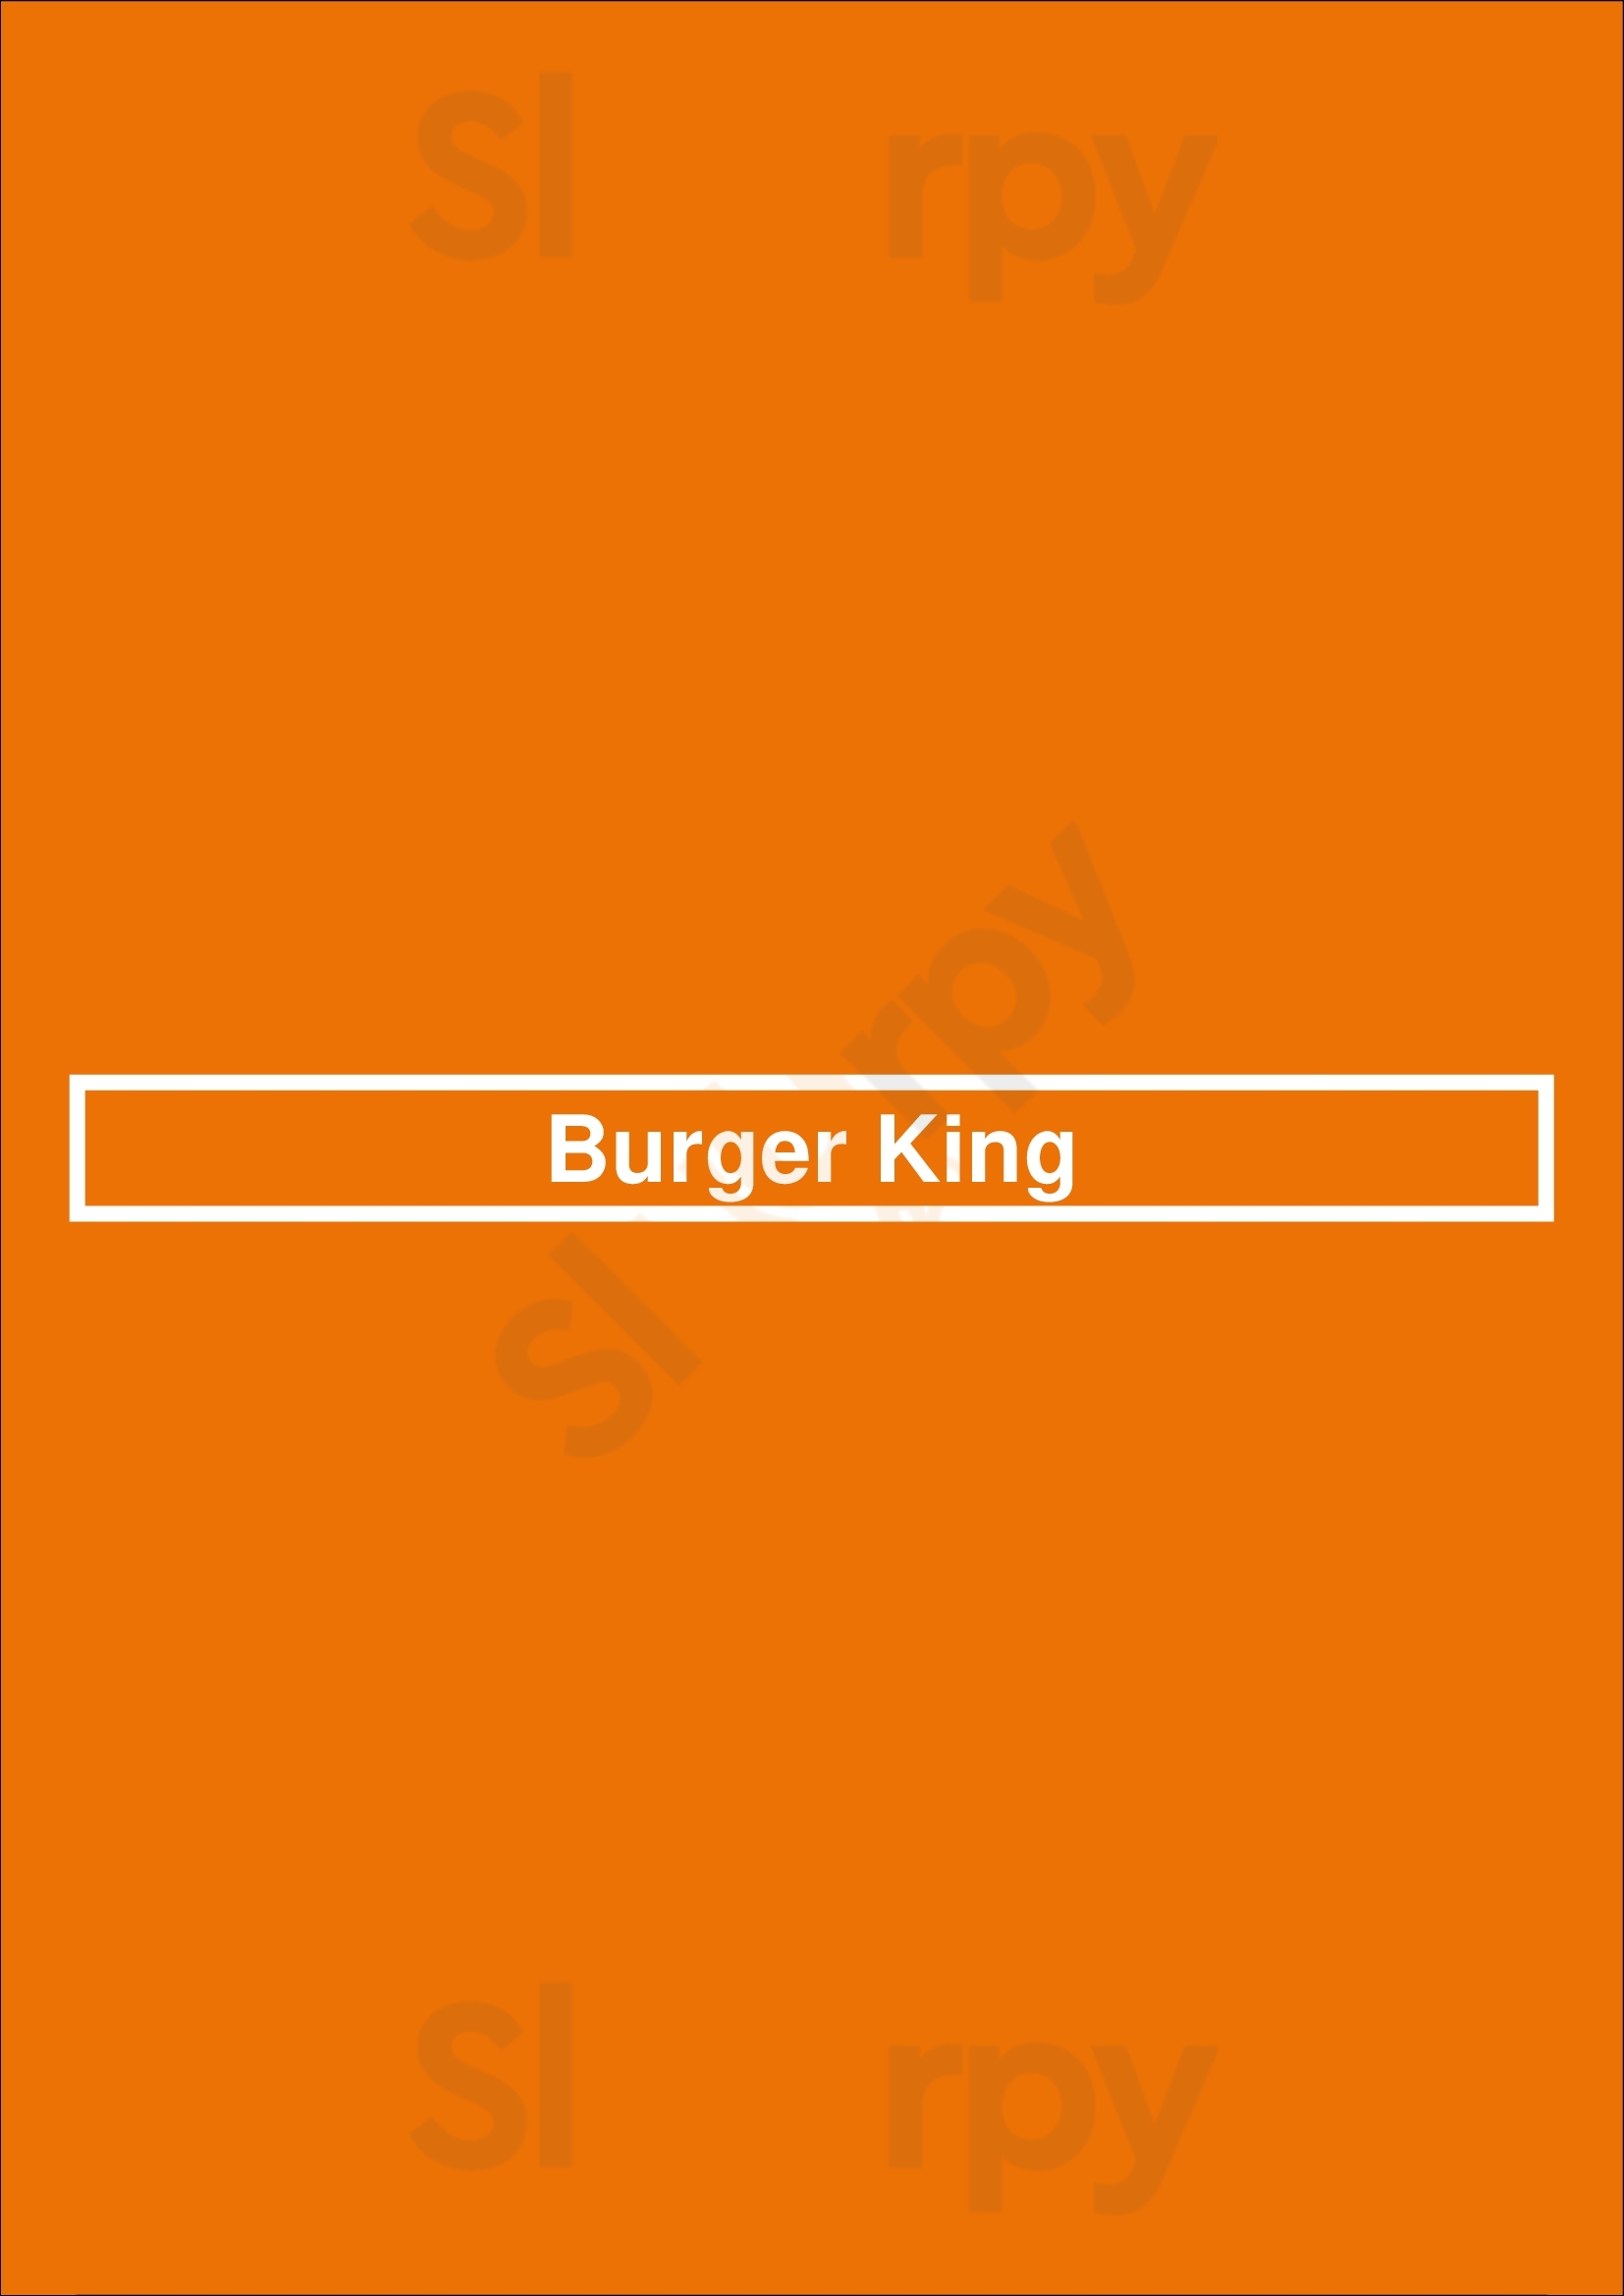 Burger King Tulsa Menu - 1